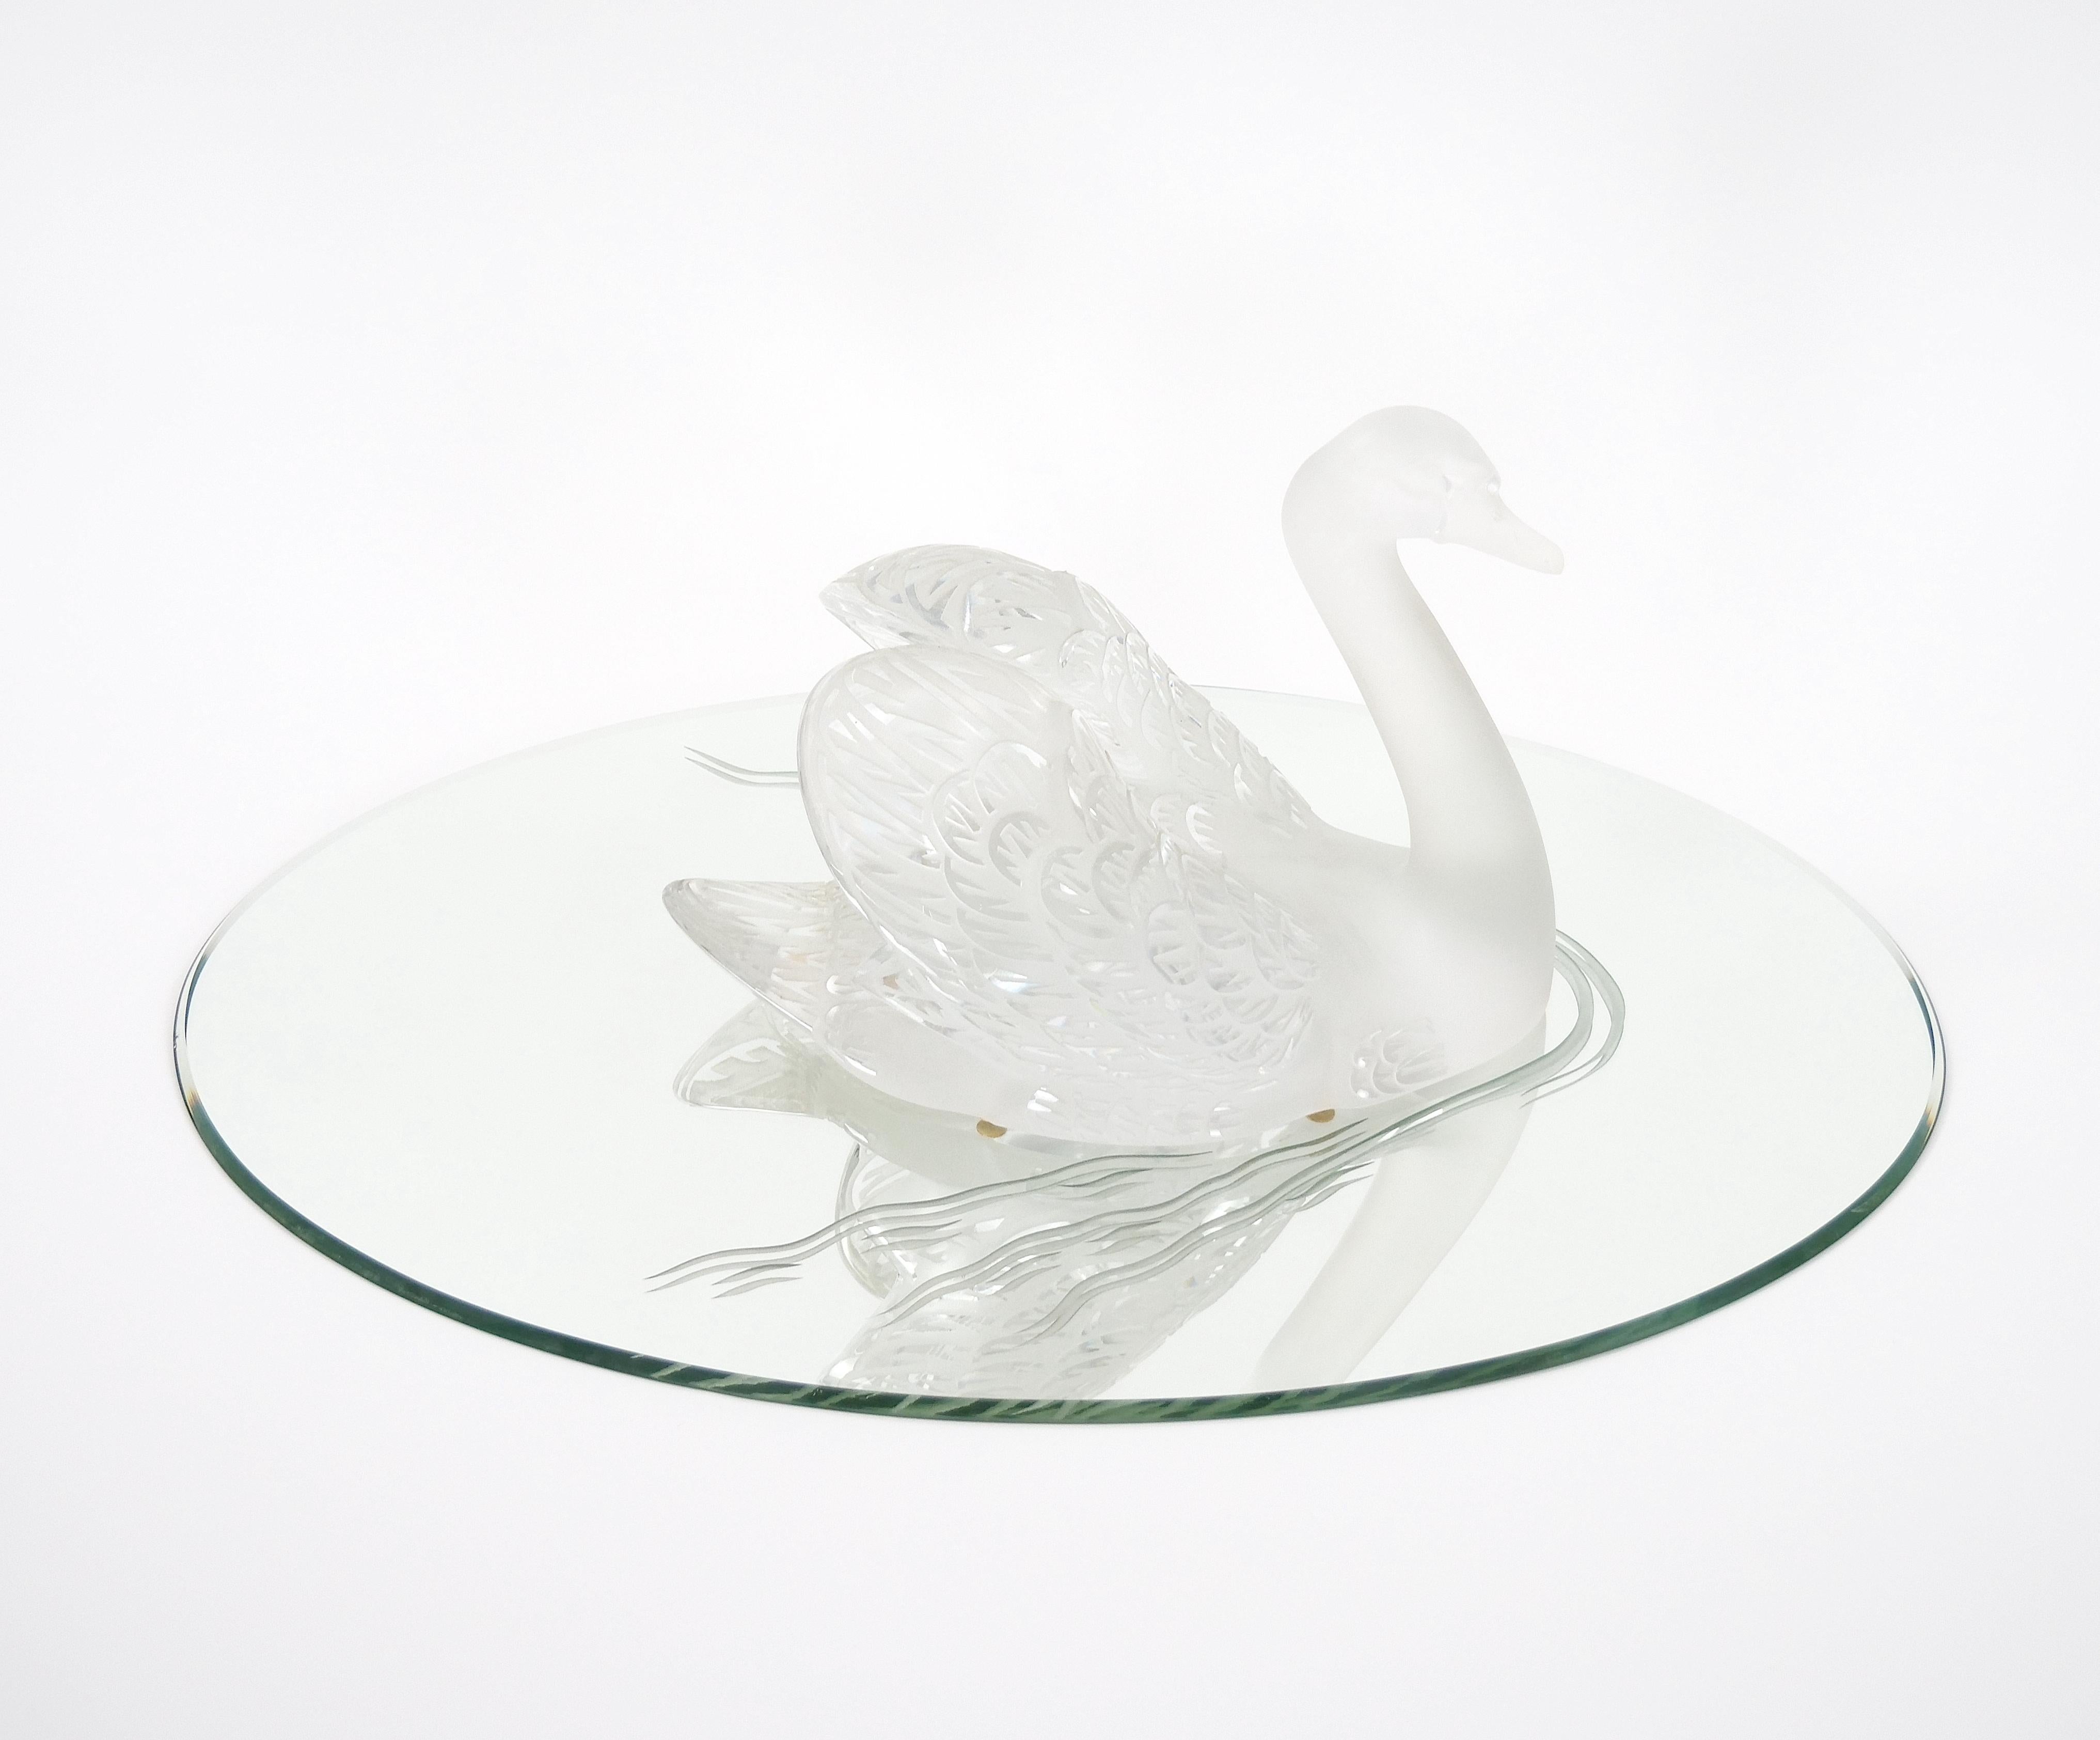 Erhöhen Sie Ihre Einrichtung mit dieser exquisiten Lalique Crystal Large Frosted Swan Sculpture, die elegant mit gesenktem Kopf auf einem ovalen Spiegelsockel ruht. Diese Skulptur ist ein wahres Meisterwerk der Kunst und der Handwerkskunst und trägt